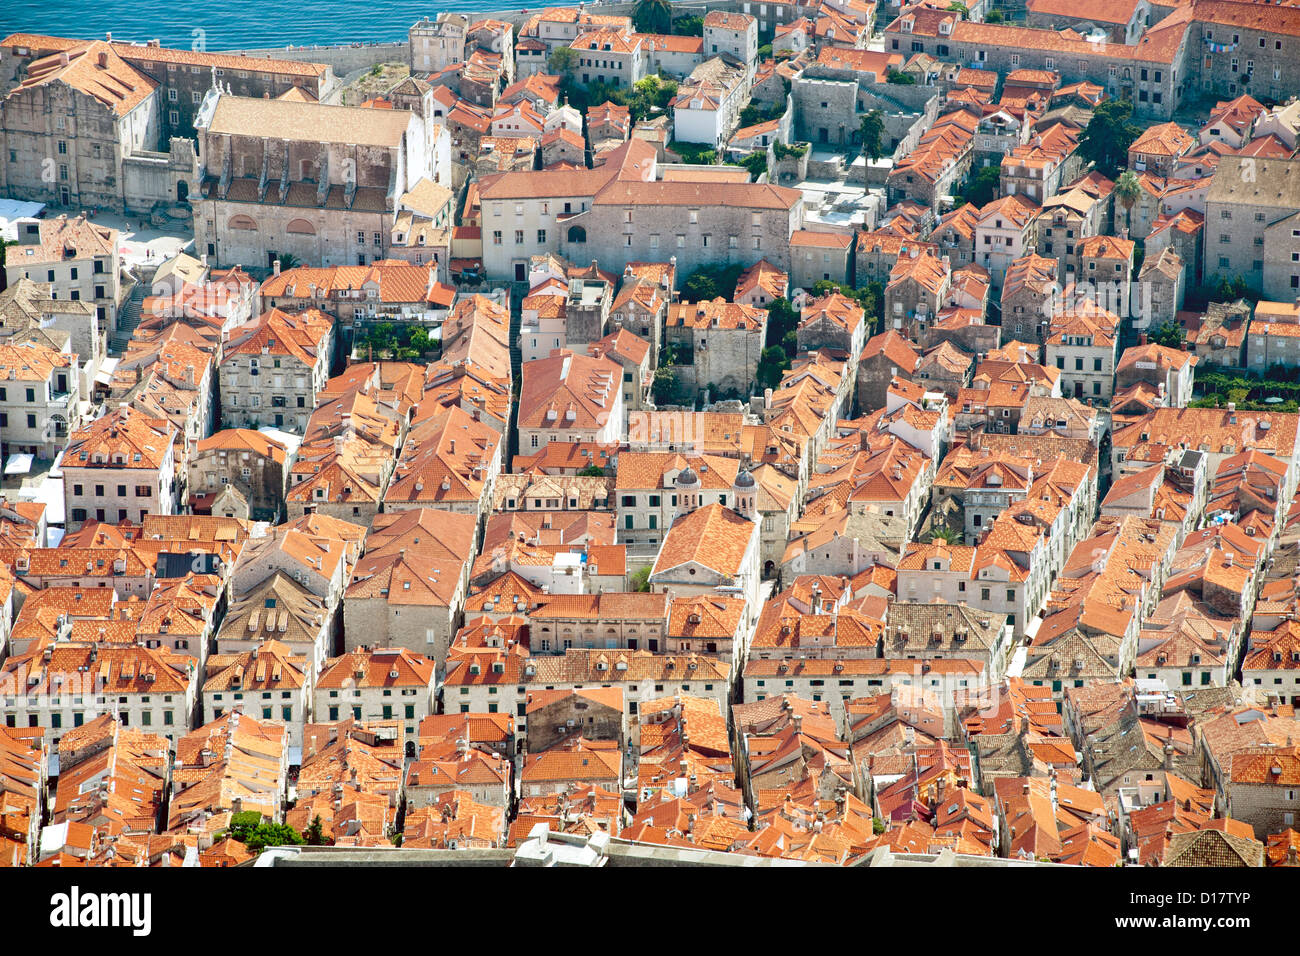 Vue sur les toits de la vieille ville dans la ville de Dubrovnik, sur la côte Adriatique de Croatie. Banque D'Images